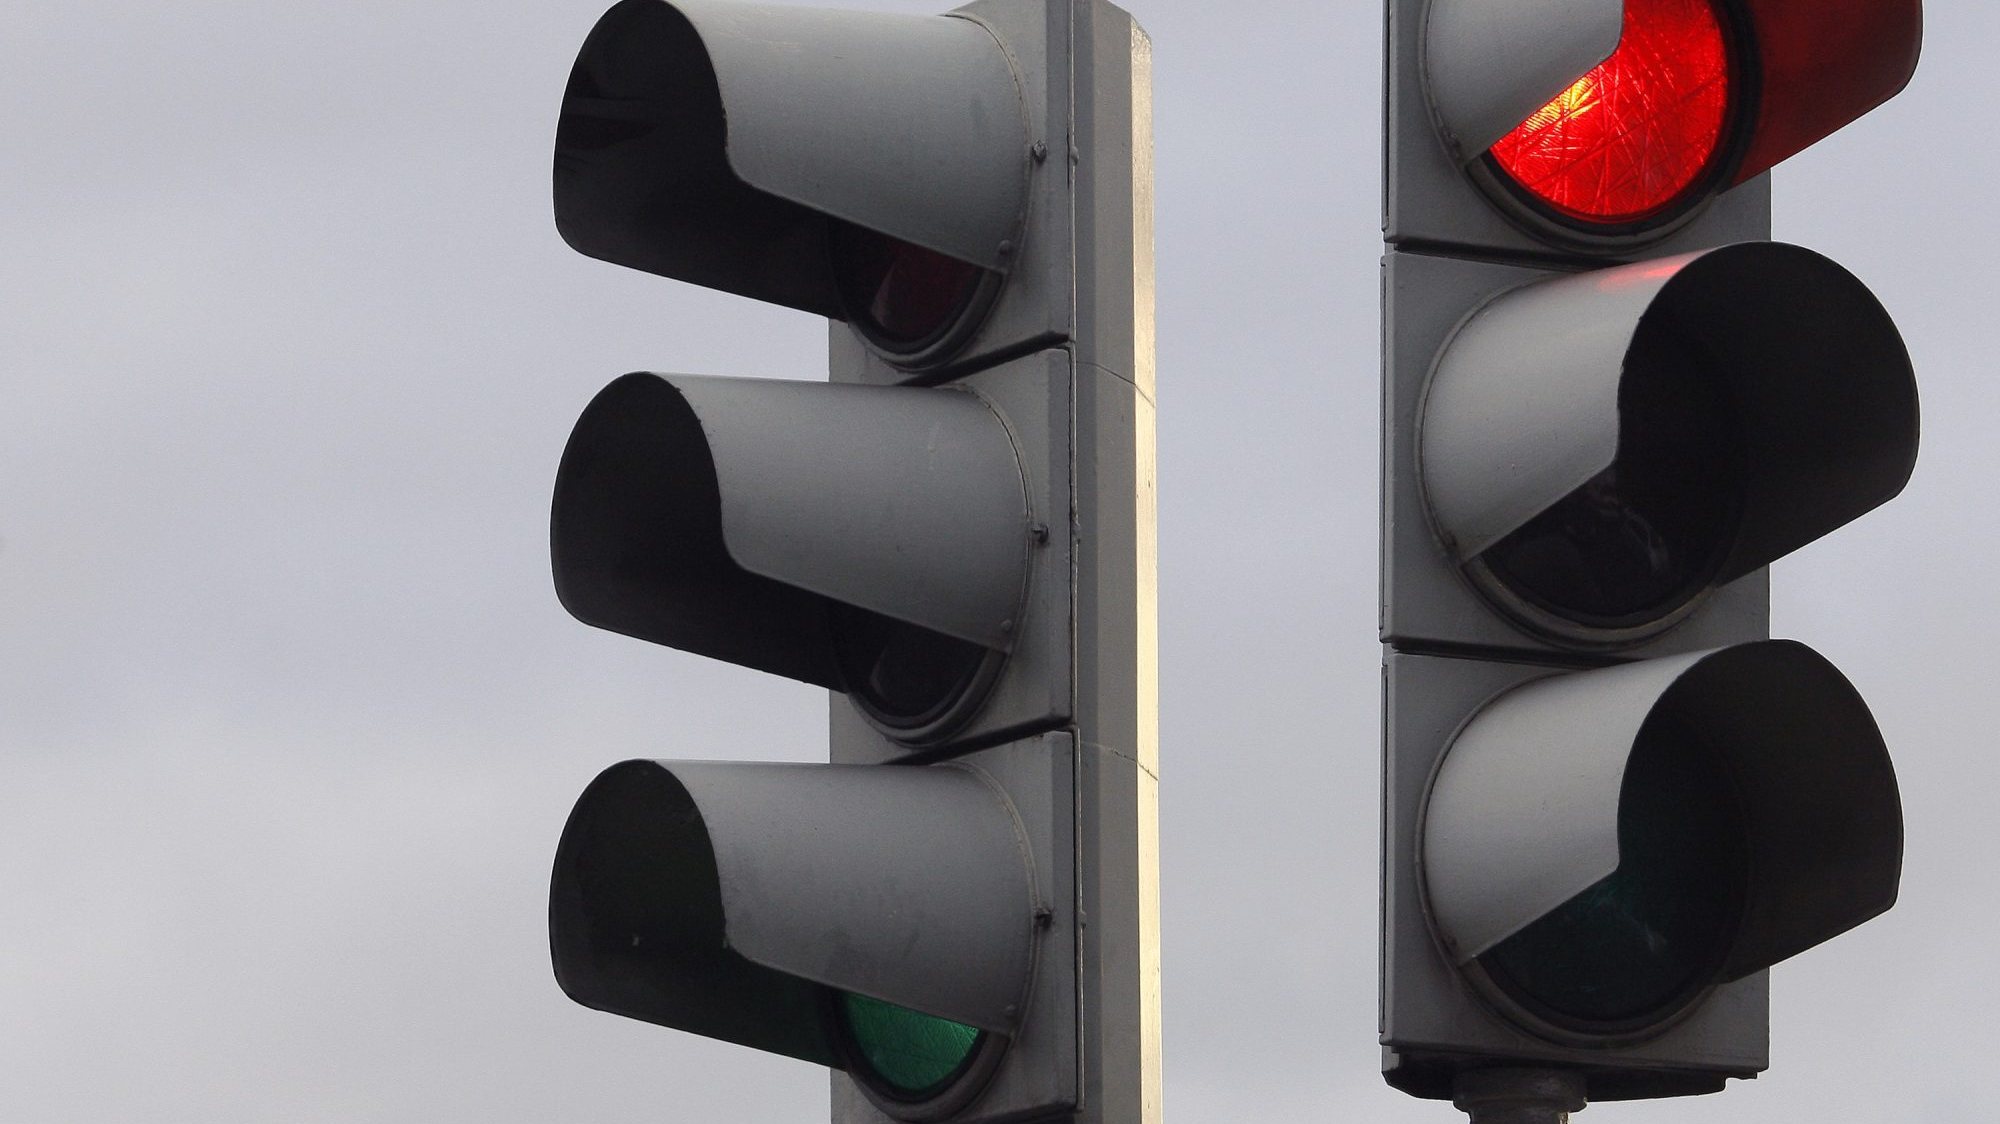 O Tribunal Central Administrativo do Norte permitiu a adjudicação do concurso para a substituição de semáforos à Sóltrafego